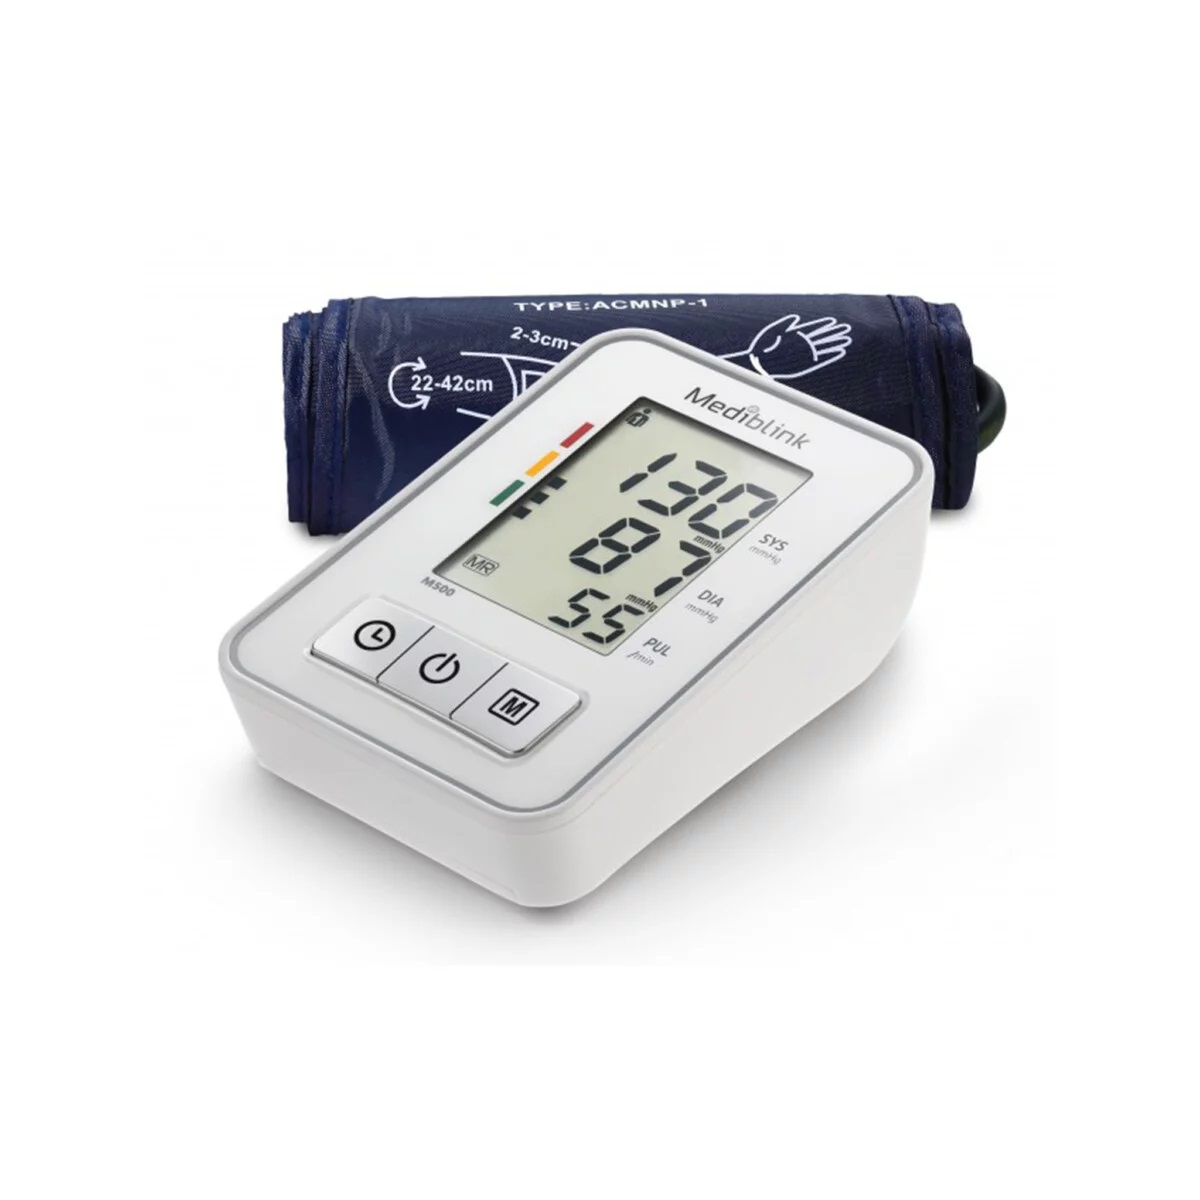 Nakup merilnika krvnega tlaka in medicinskih pripomoźkov na naroźilnico